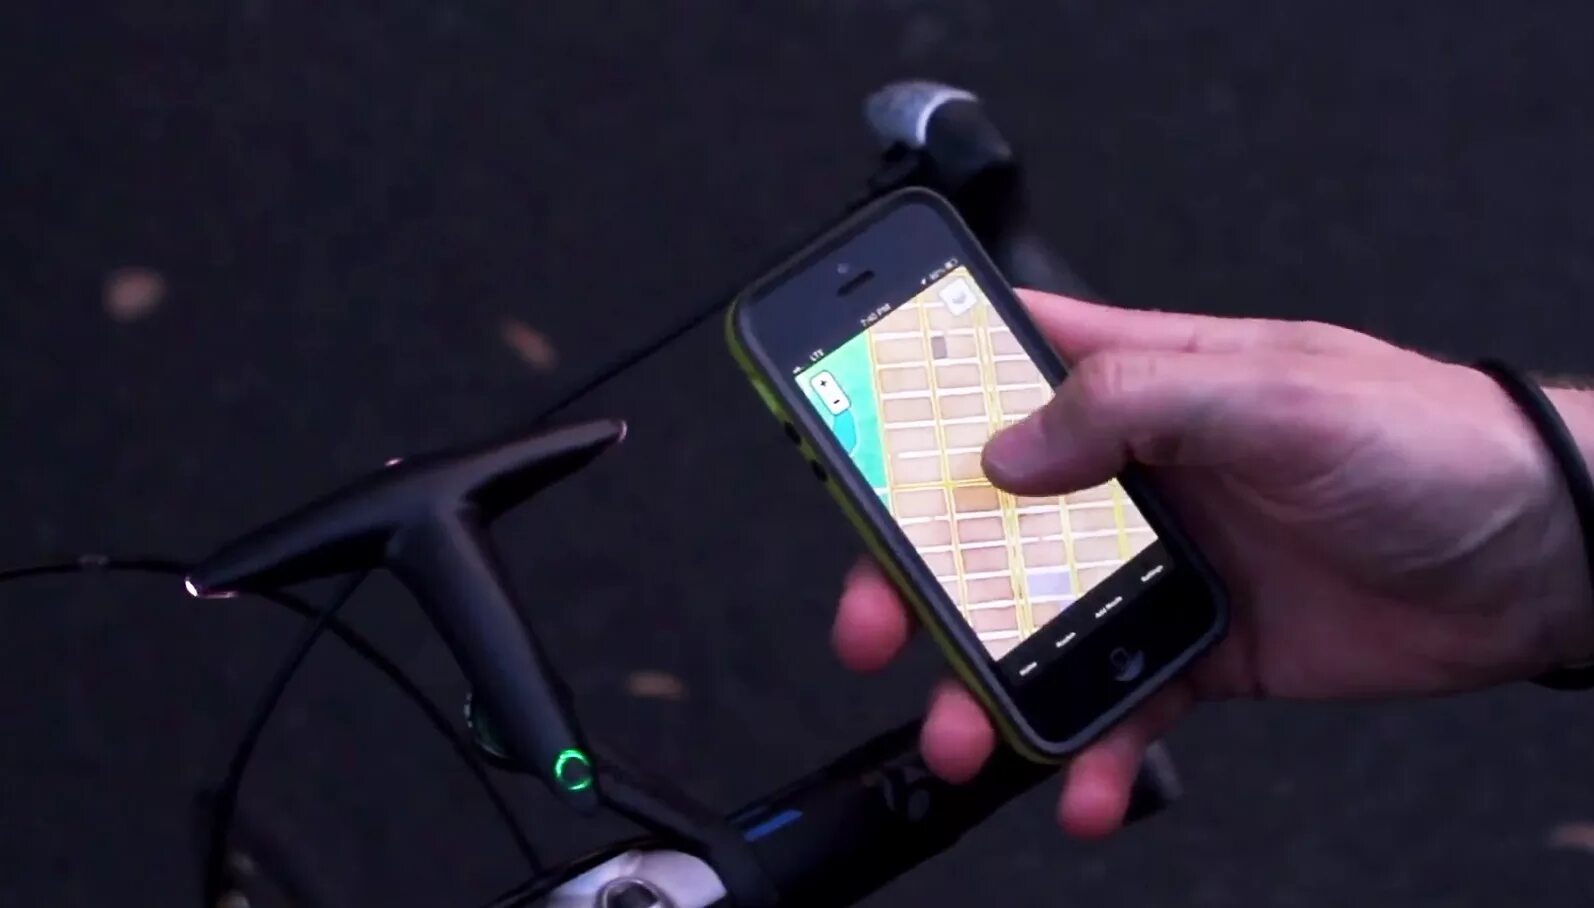 Велосипедный навигатор для андроид. Приложение для велосипедистов iphone. Телефон в руки с навигатором велосипед. Велогаджеты.